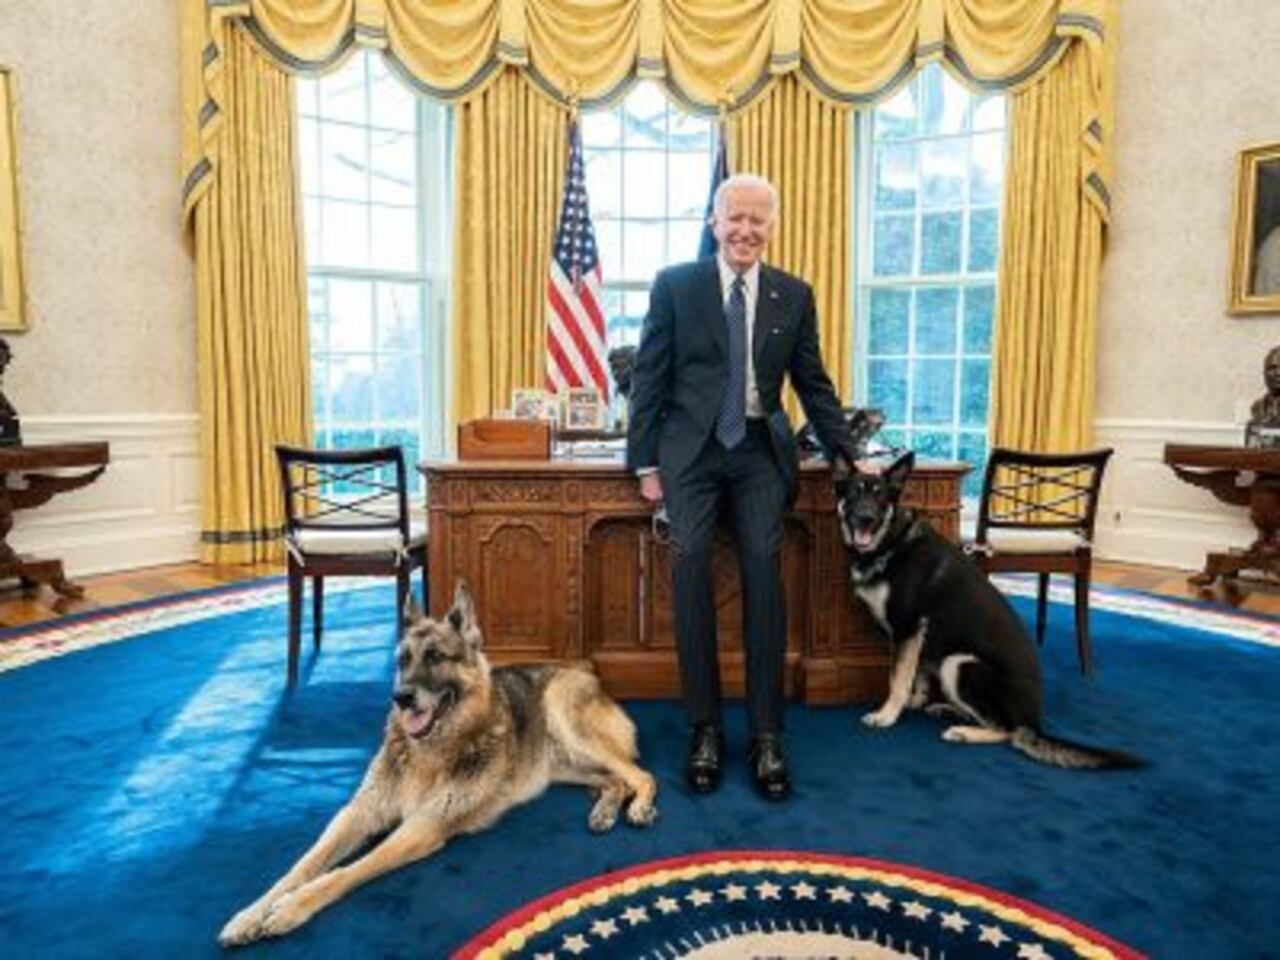 Los Biden buscan una solución para el perro y evitar más problemas